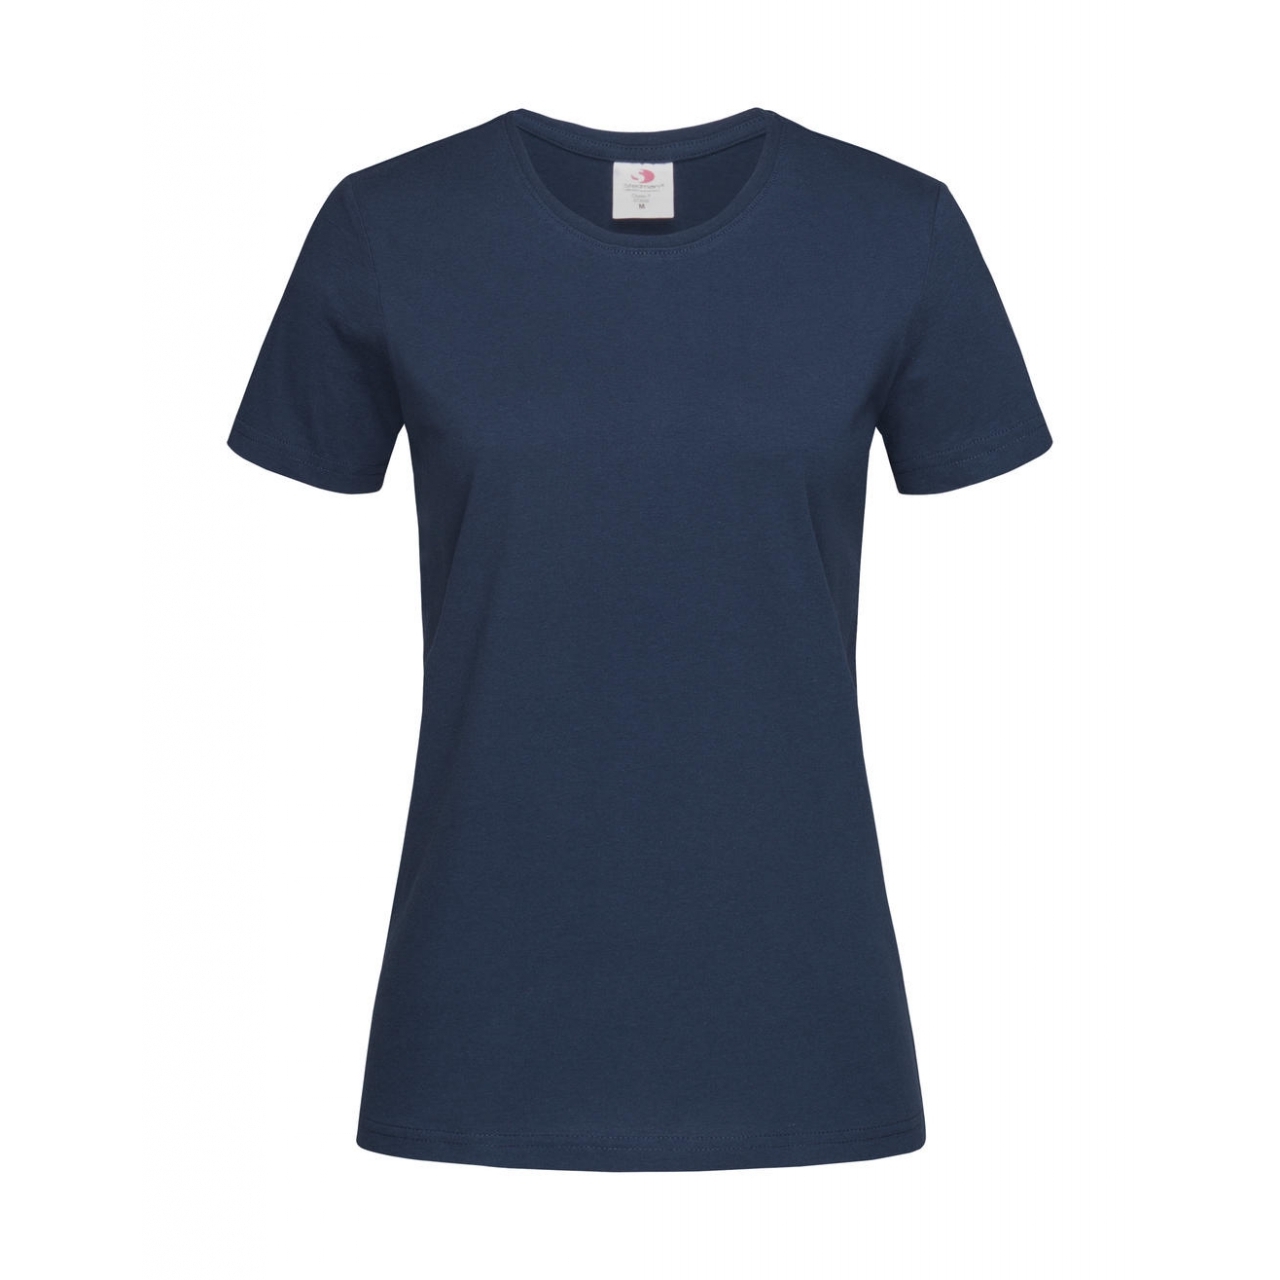 Tričko dámské Stedman Fitted s kulatým výstřihem - navy, XL